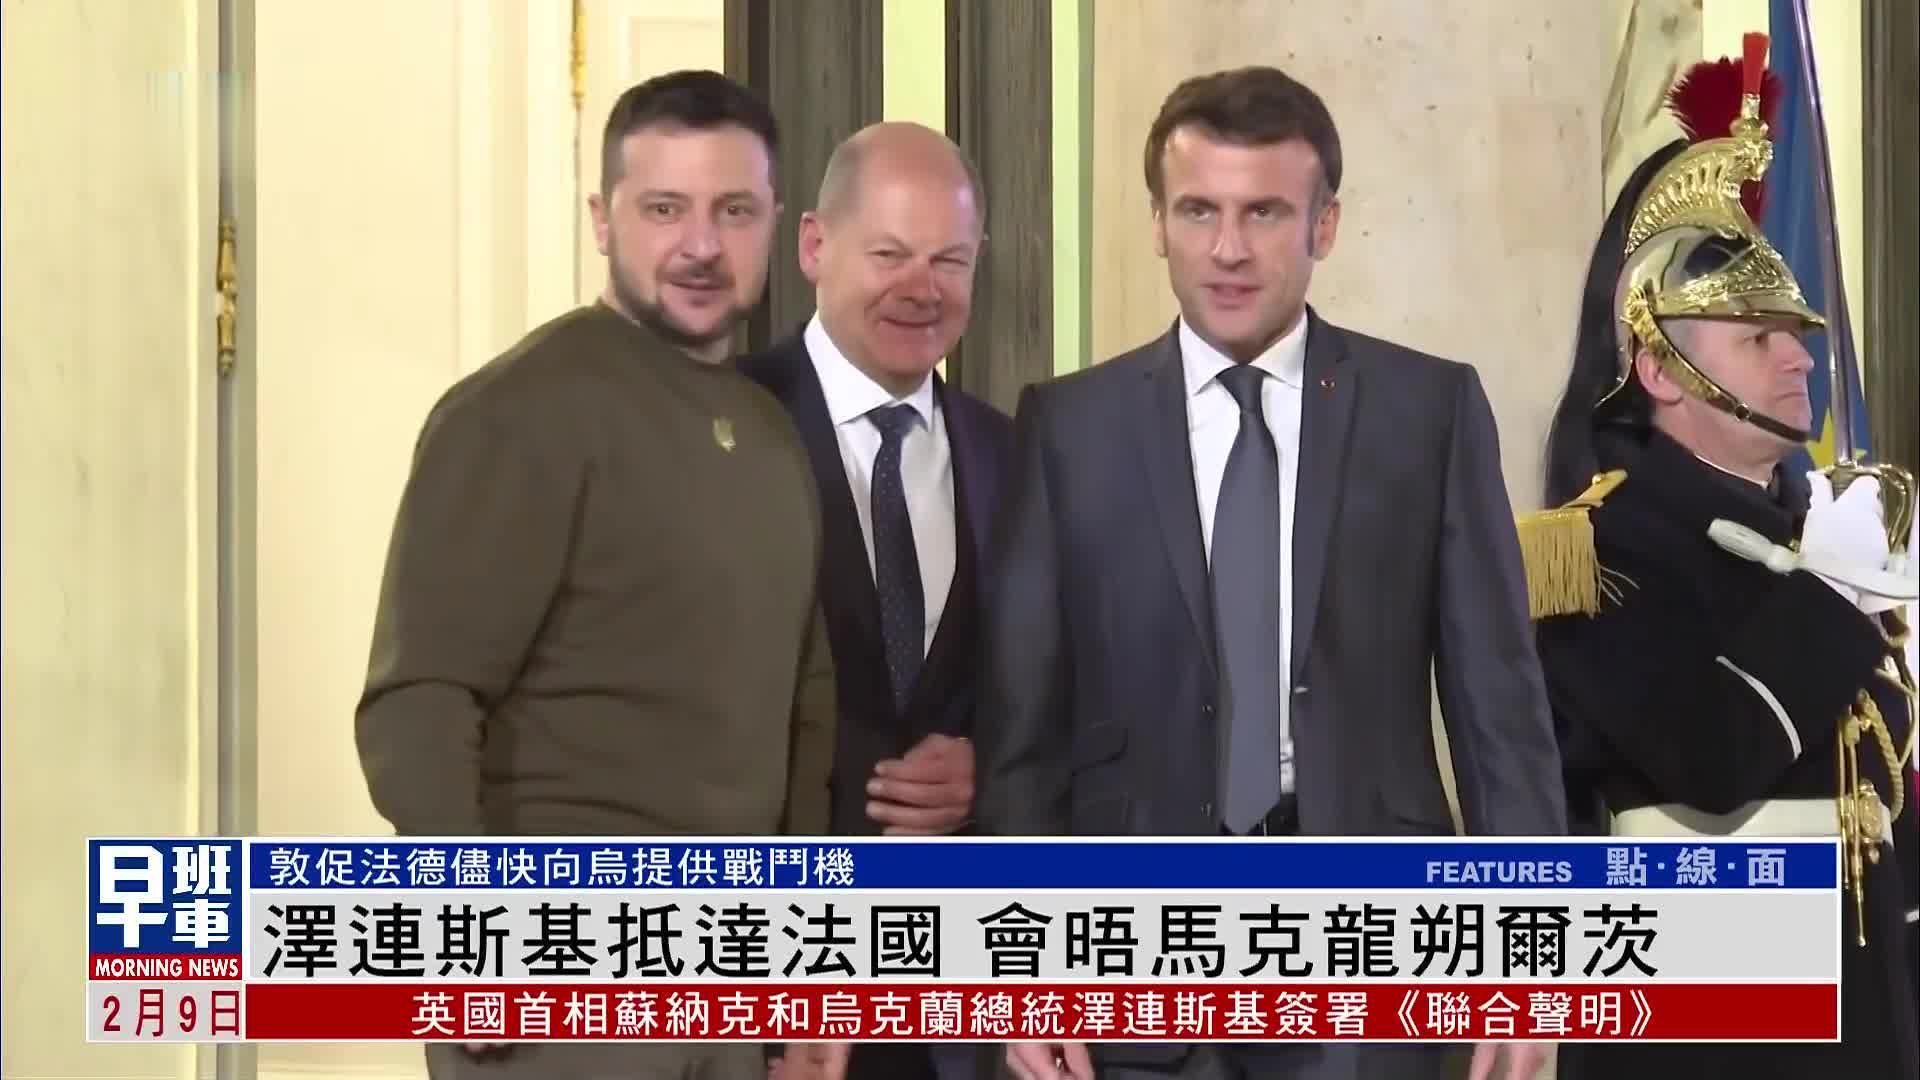 泽连斯基抵达法国 会晤法德两国领袖马克龙和朔尔茨